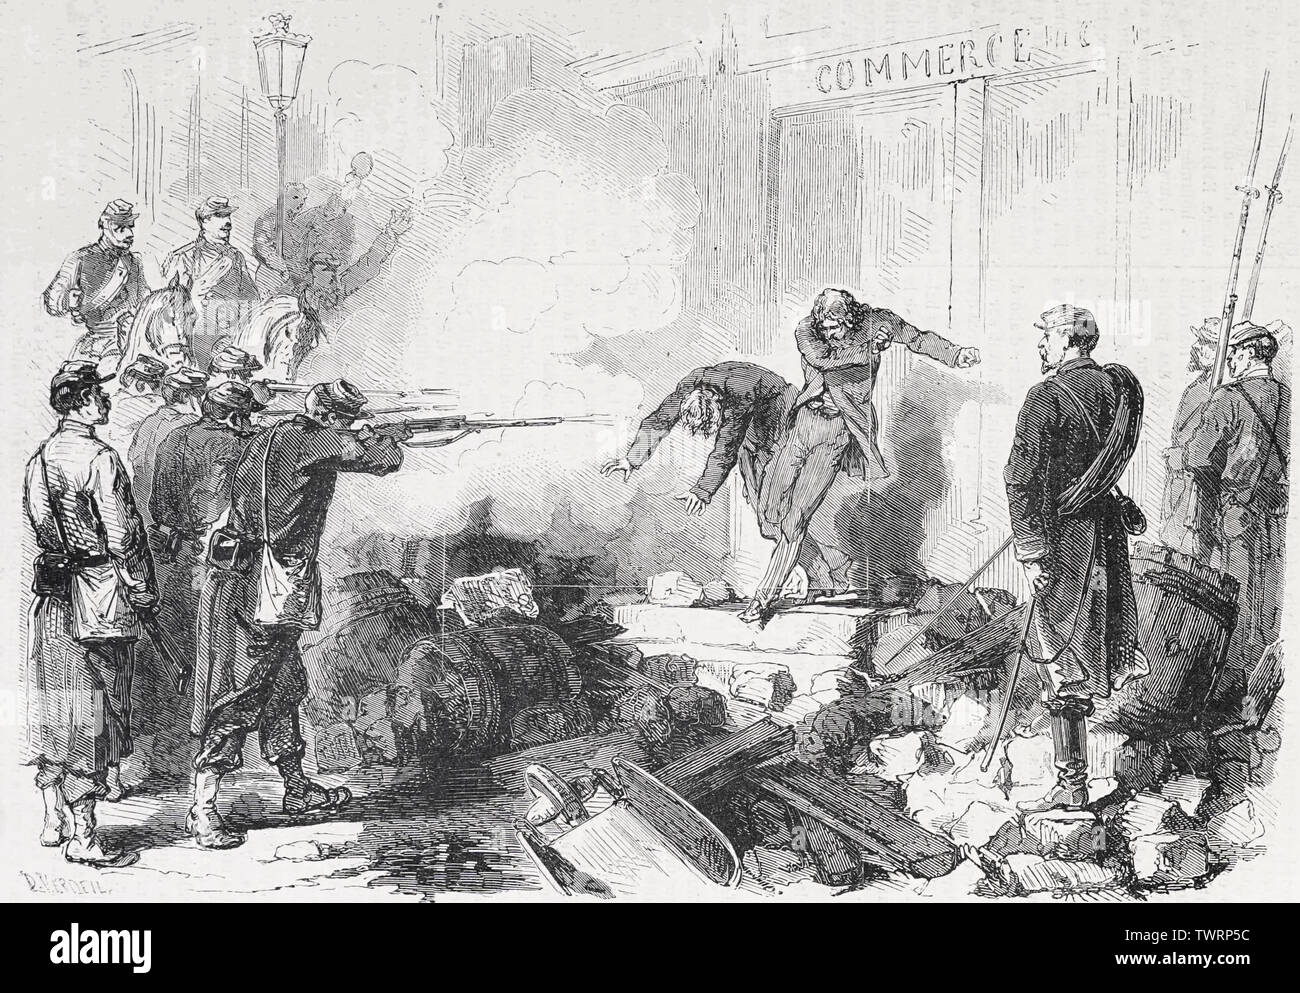 Zusammenfassung die Ausführung von Agenten, die von der Gemeinde mit der Waffe in der Hand genommen, Rue Saint-Germain während des Angriffs auf die Pariser Kommune, 1871 Stockfoto